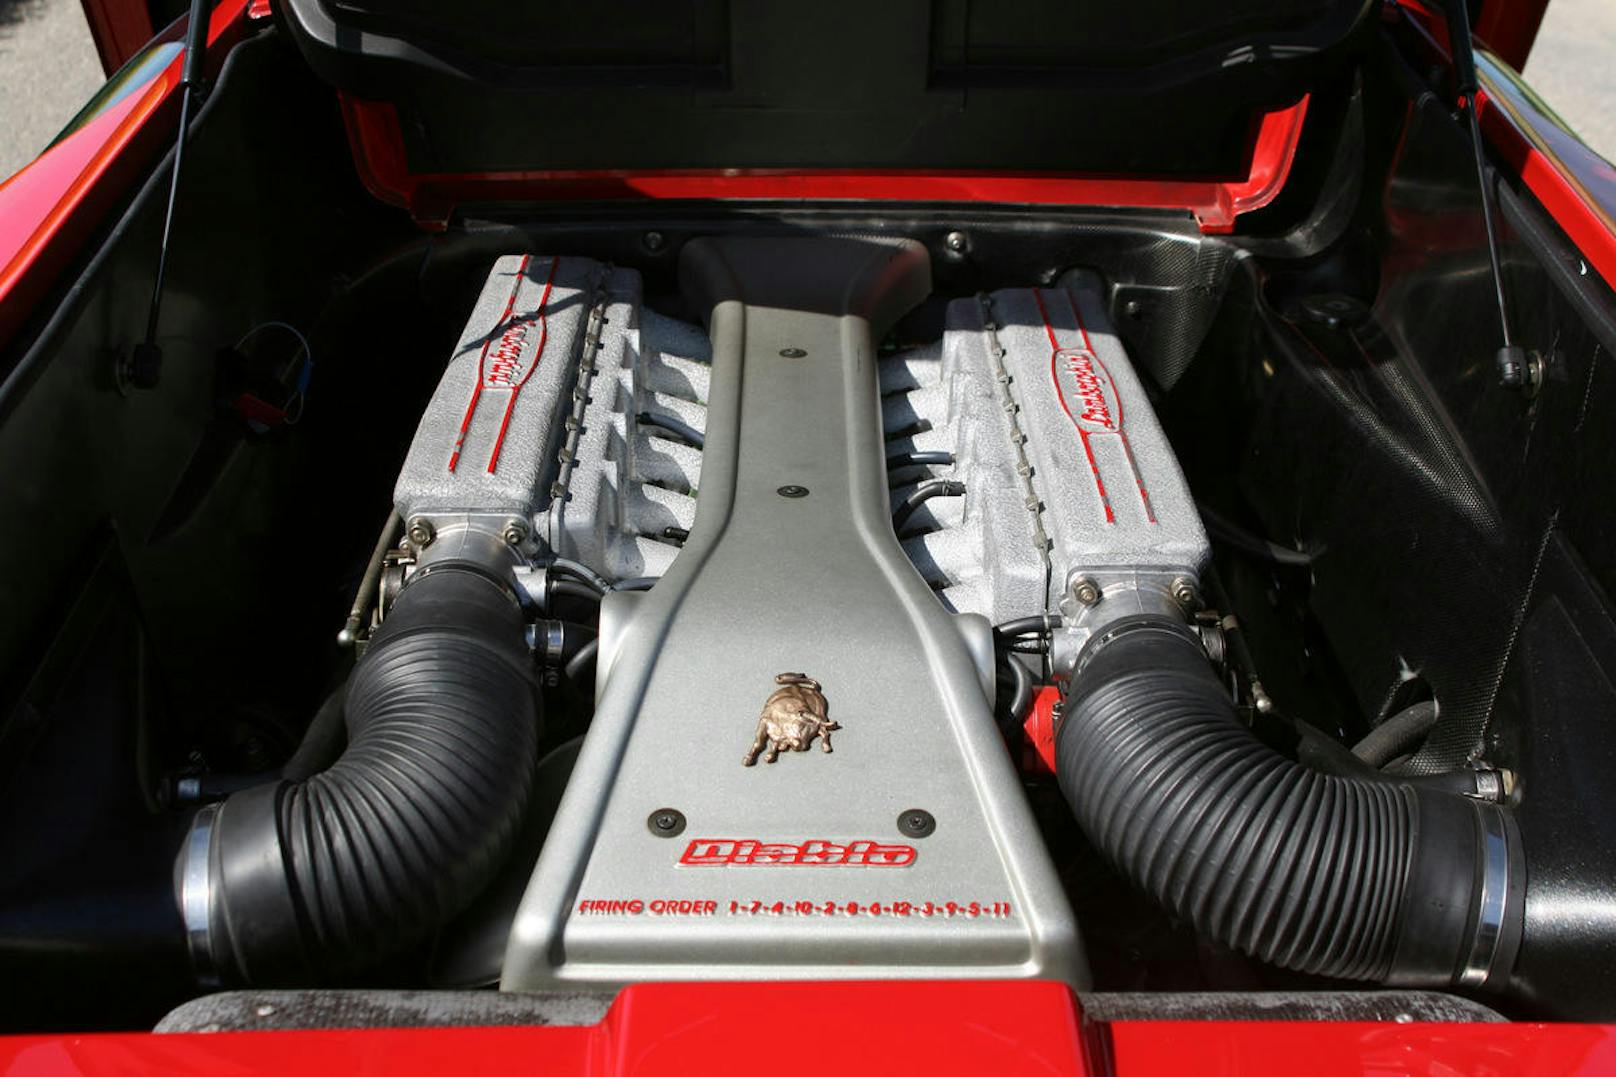 Riesiger V12 Motor mit üppig Leistung (und Wärmeentwicklung).